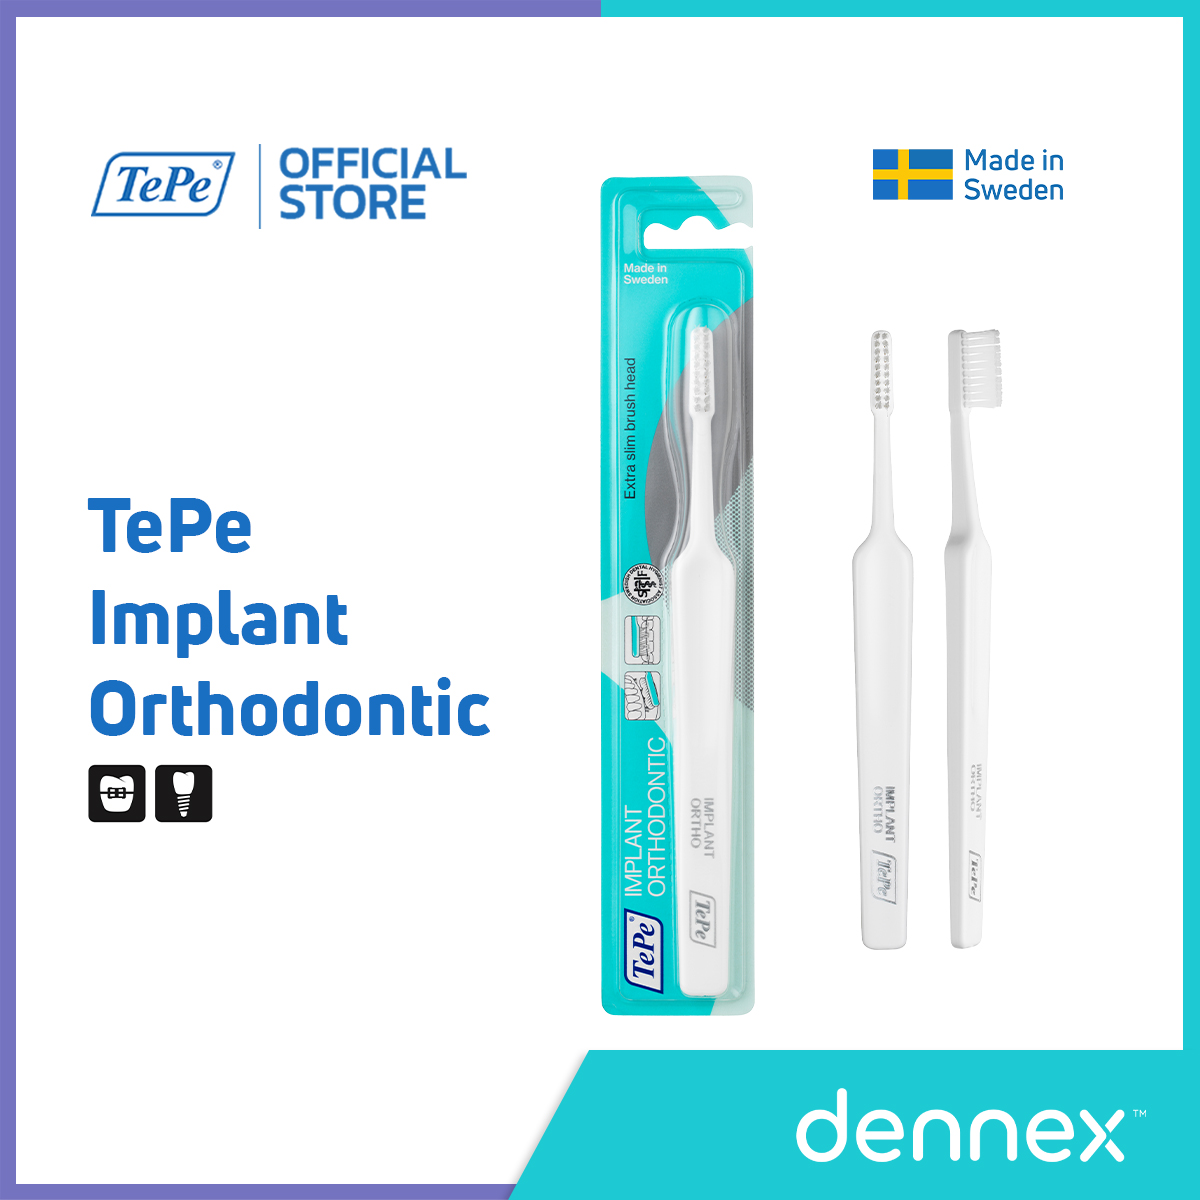 โปรโมชั่น TePe Implant/Orthodontic แปรง ทำความสะอาด เครื่องมือจัดฟัน หรือ รากฟันเทียม แปรงสีฟันเทเป้ อิมแพลนท์/ออโทดอนทิก 1 ชิ้น By Dennex